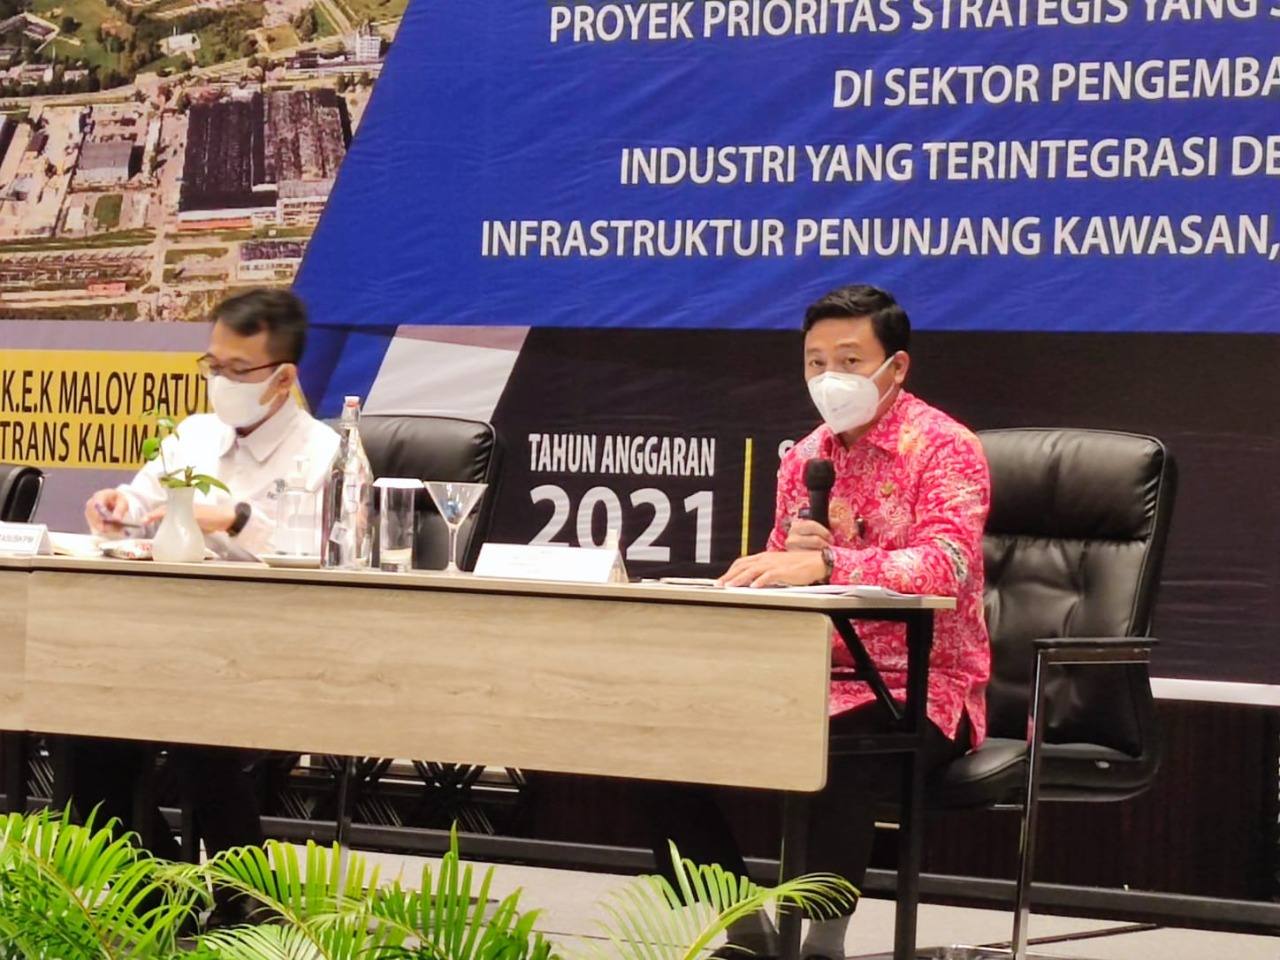 KEK Maloy Batuta Trans Kalimantan Masuk Daftar Proyek Prioritas Strategis Kementerian Investasi